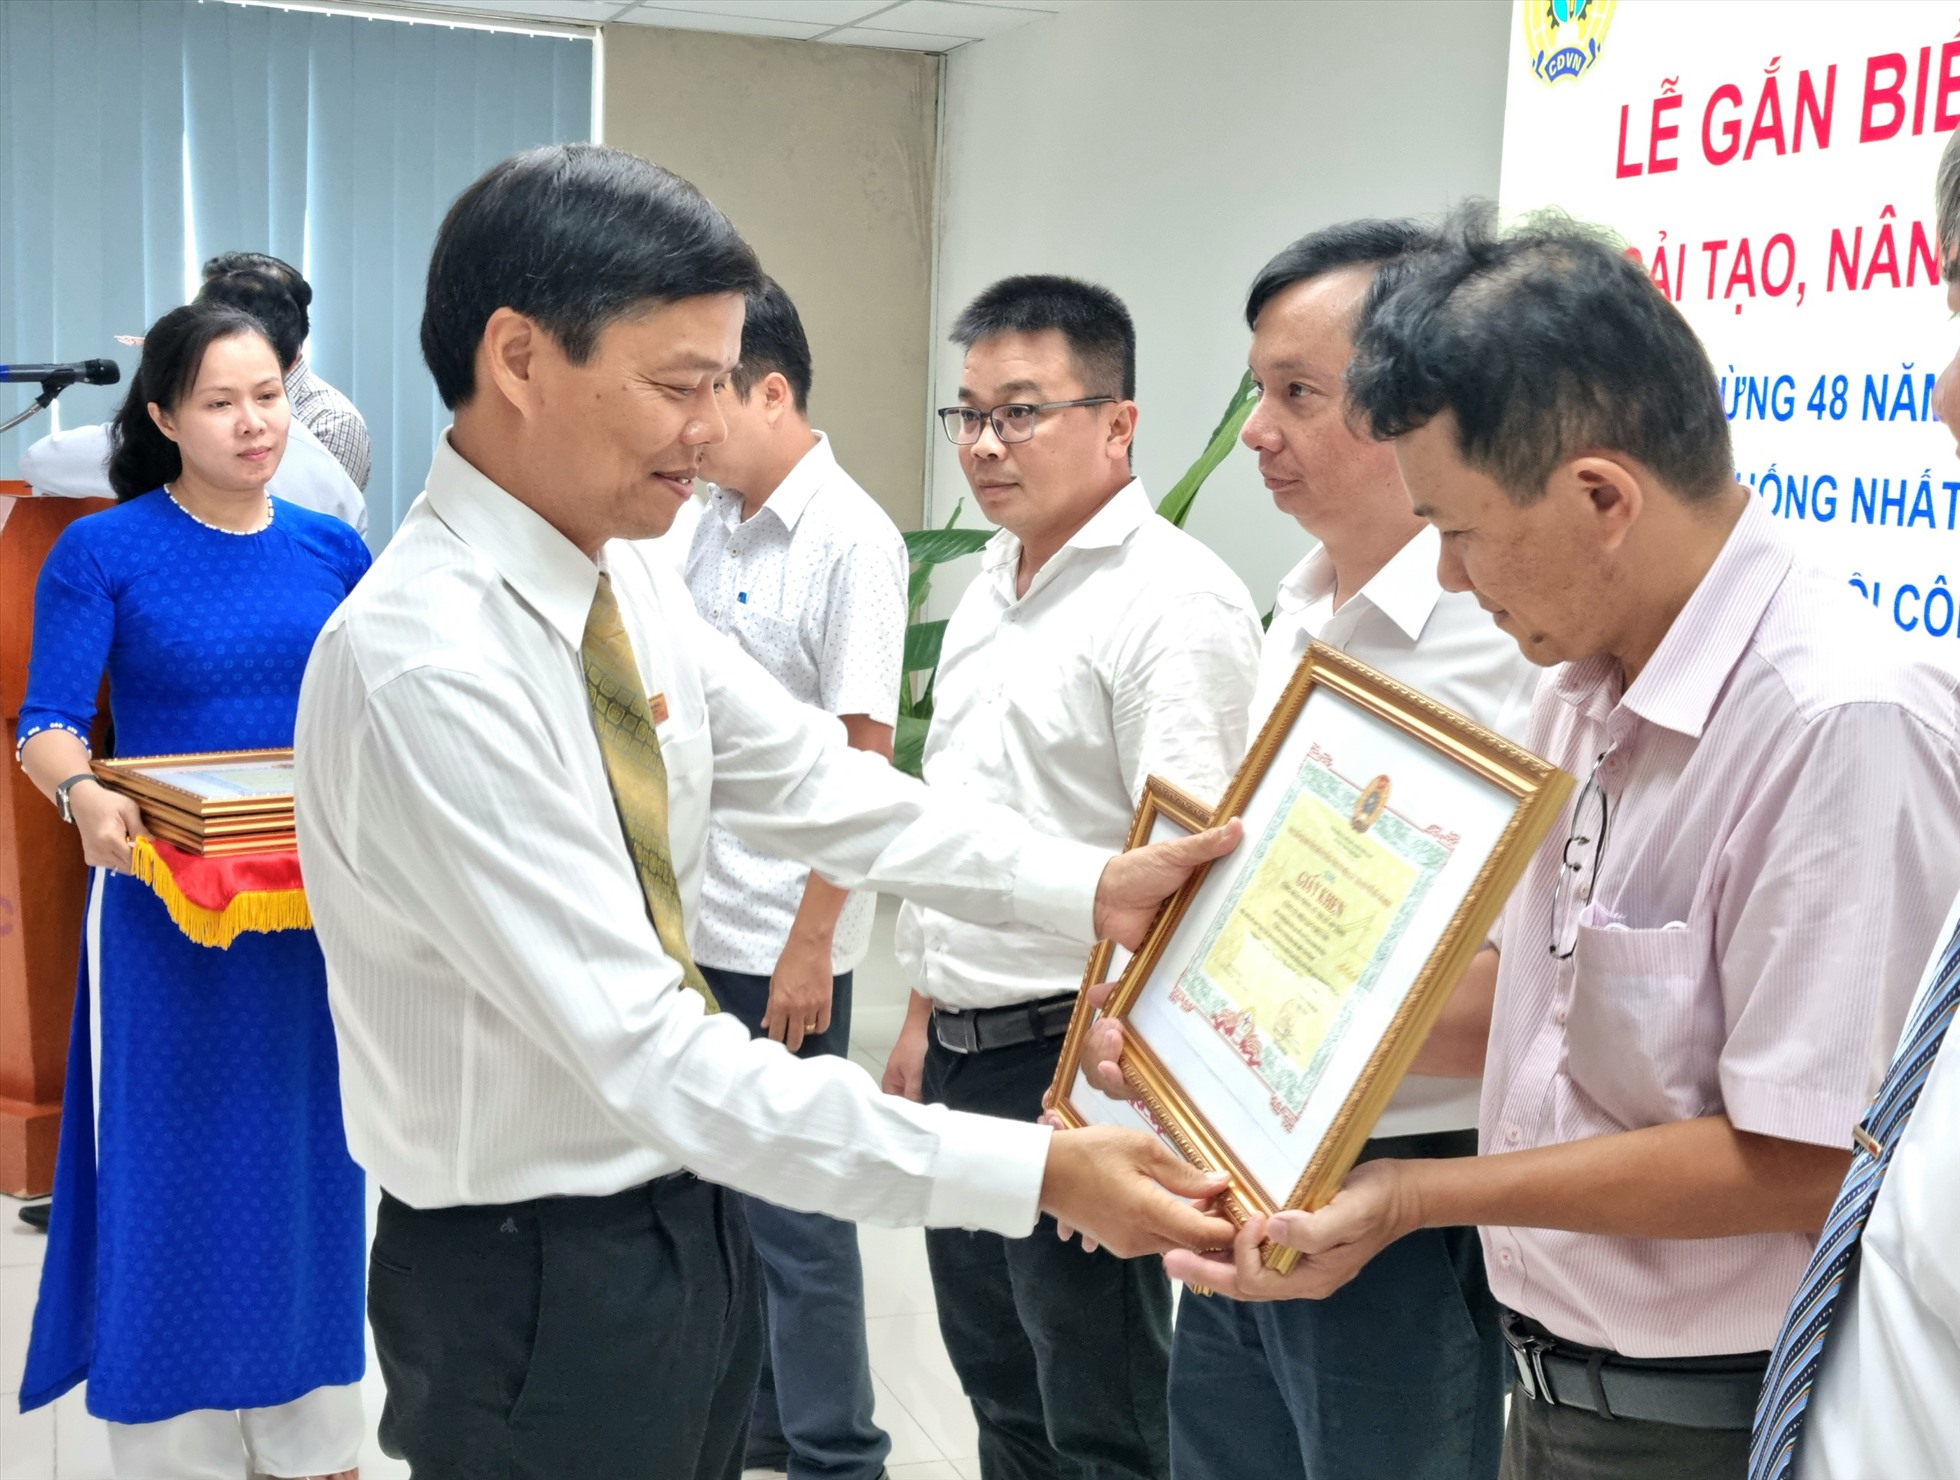 Ông Lê Văn Minh - Chủ tịch Công đoàn EVNHCMC - trao giấy khen cho đại diện các tập thể và cá nhân có thành tích trong thực hiện công trình. Ảnh: Nam Dương